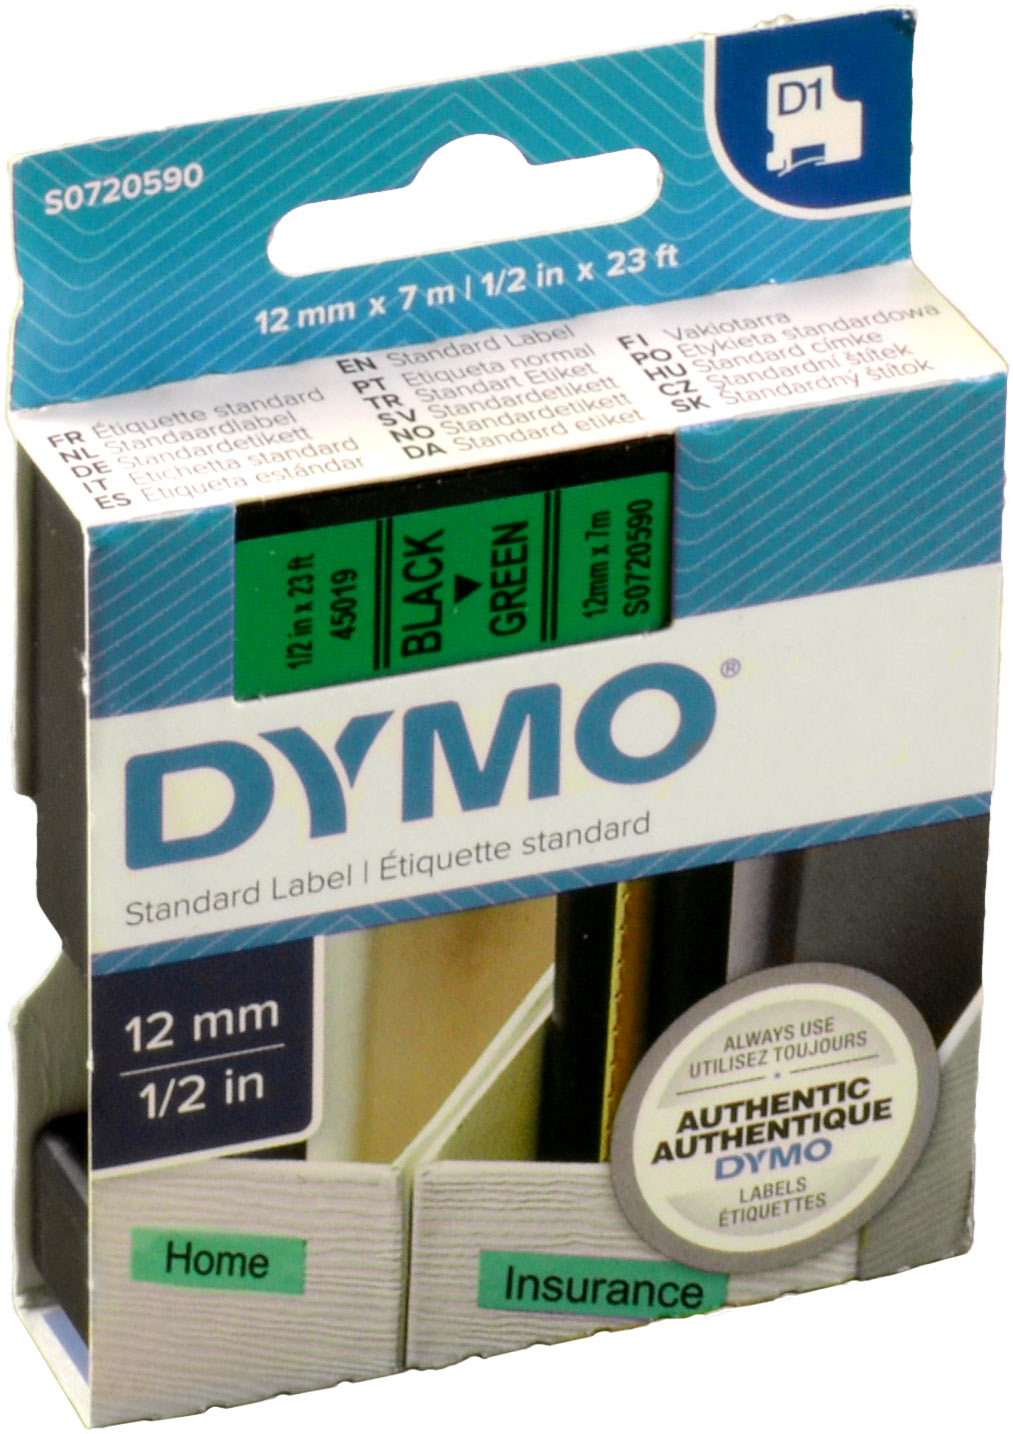 Dymo Originalband 45019  schwarz auf grün  12mm x 7m